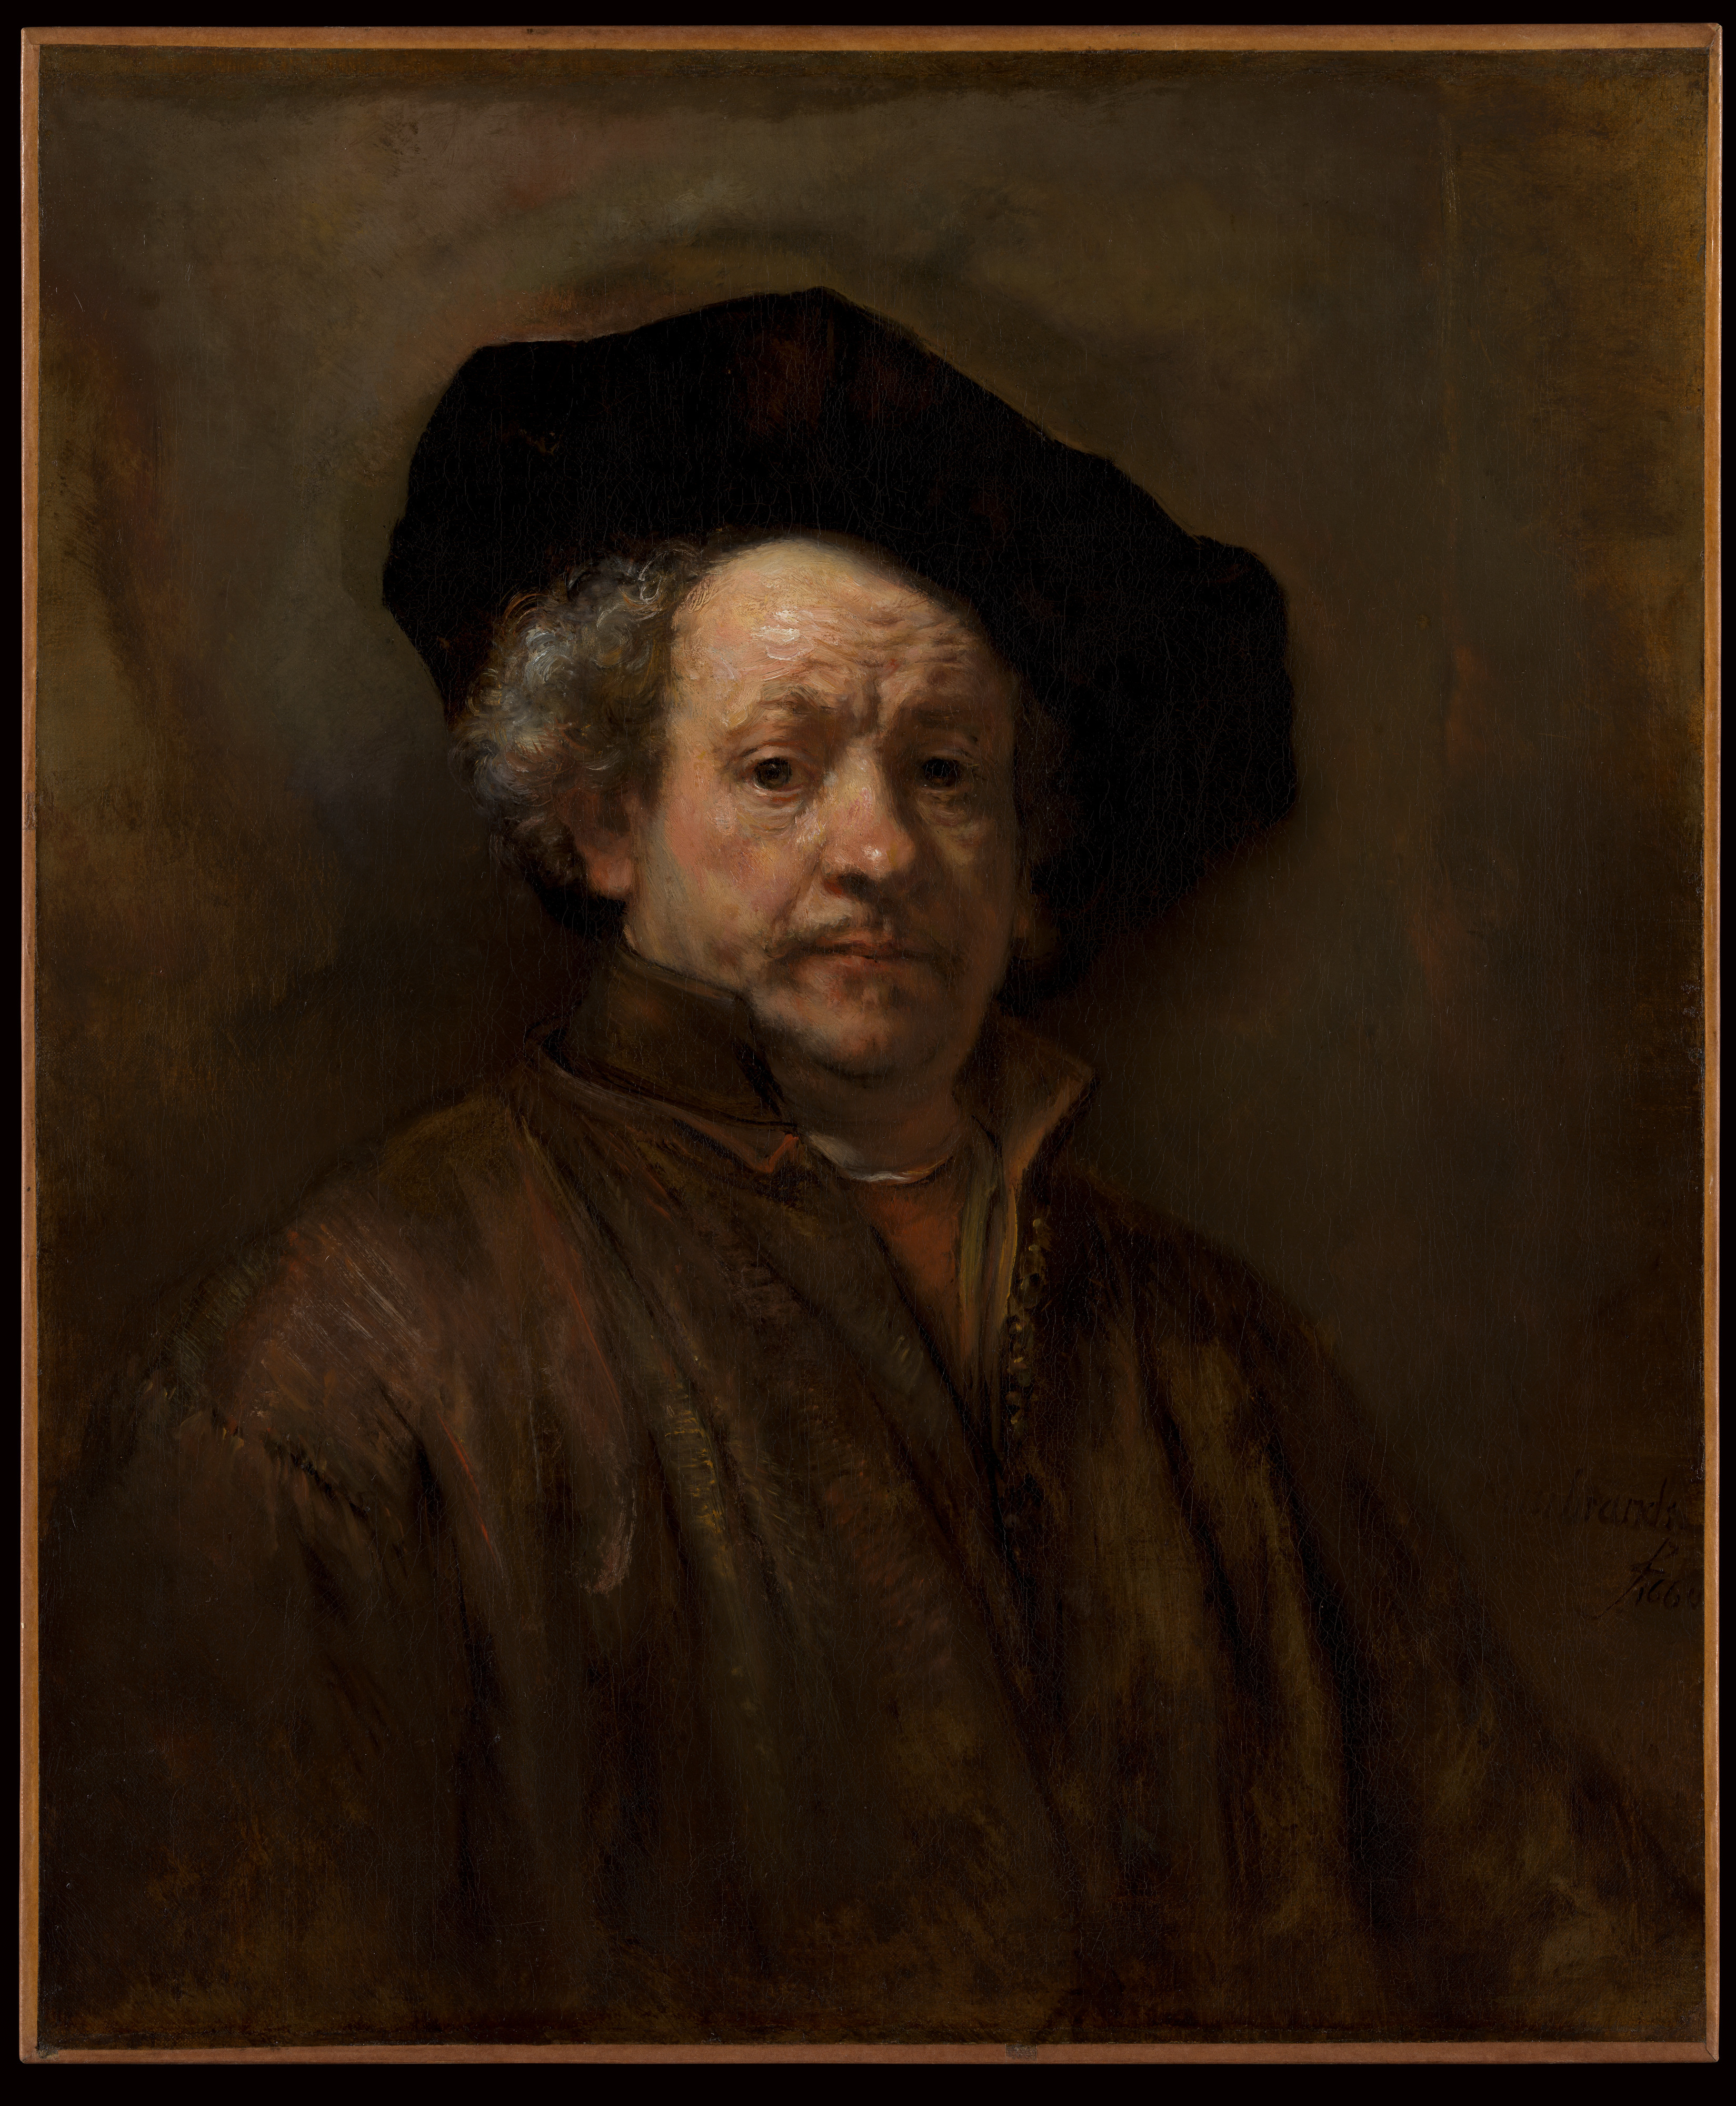 自画像 by Rembrandt van Rijn - 1660年 - 31.625インチ x 26 .5インチ 